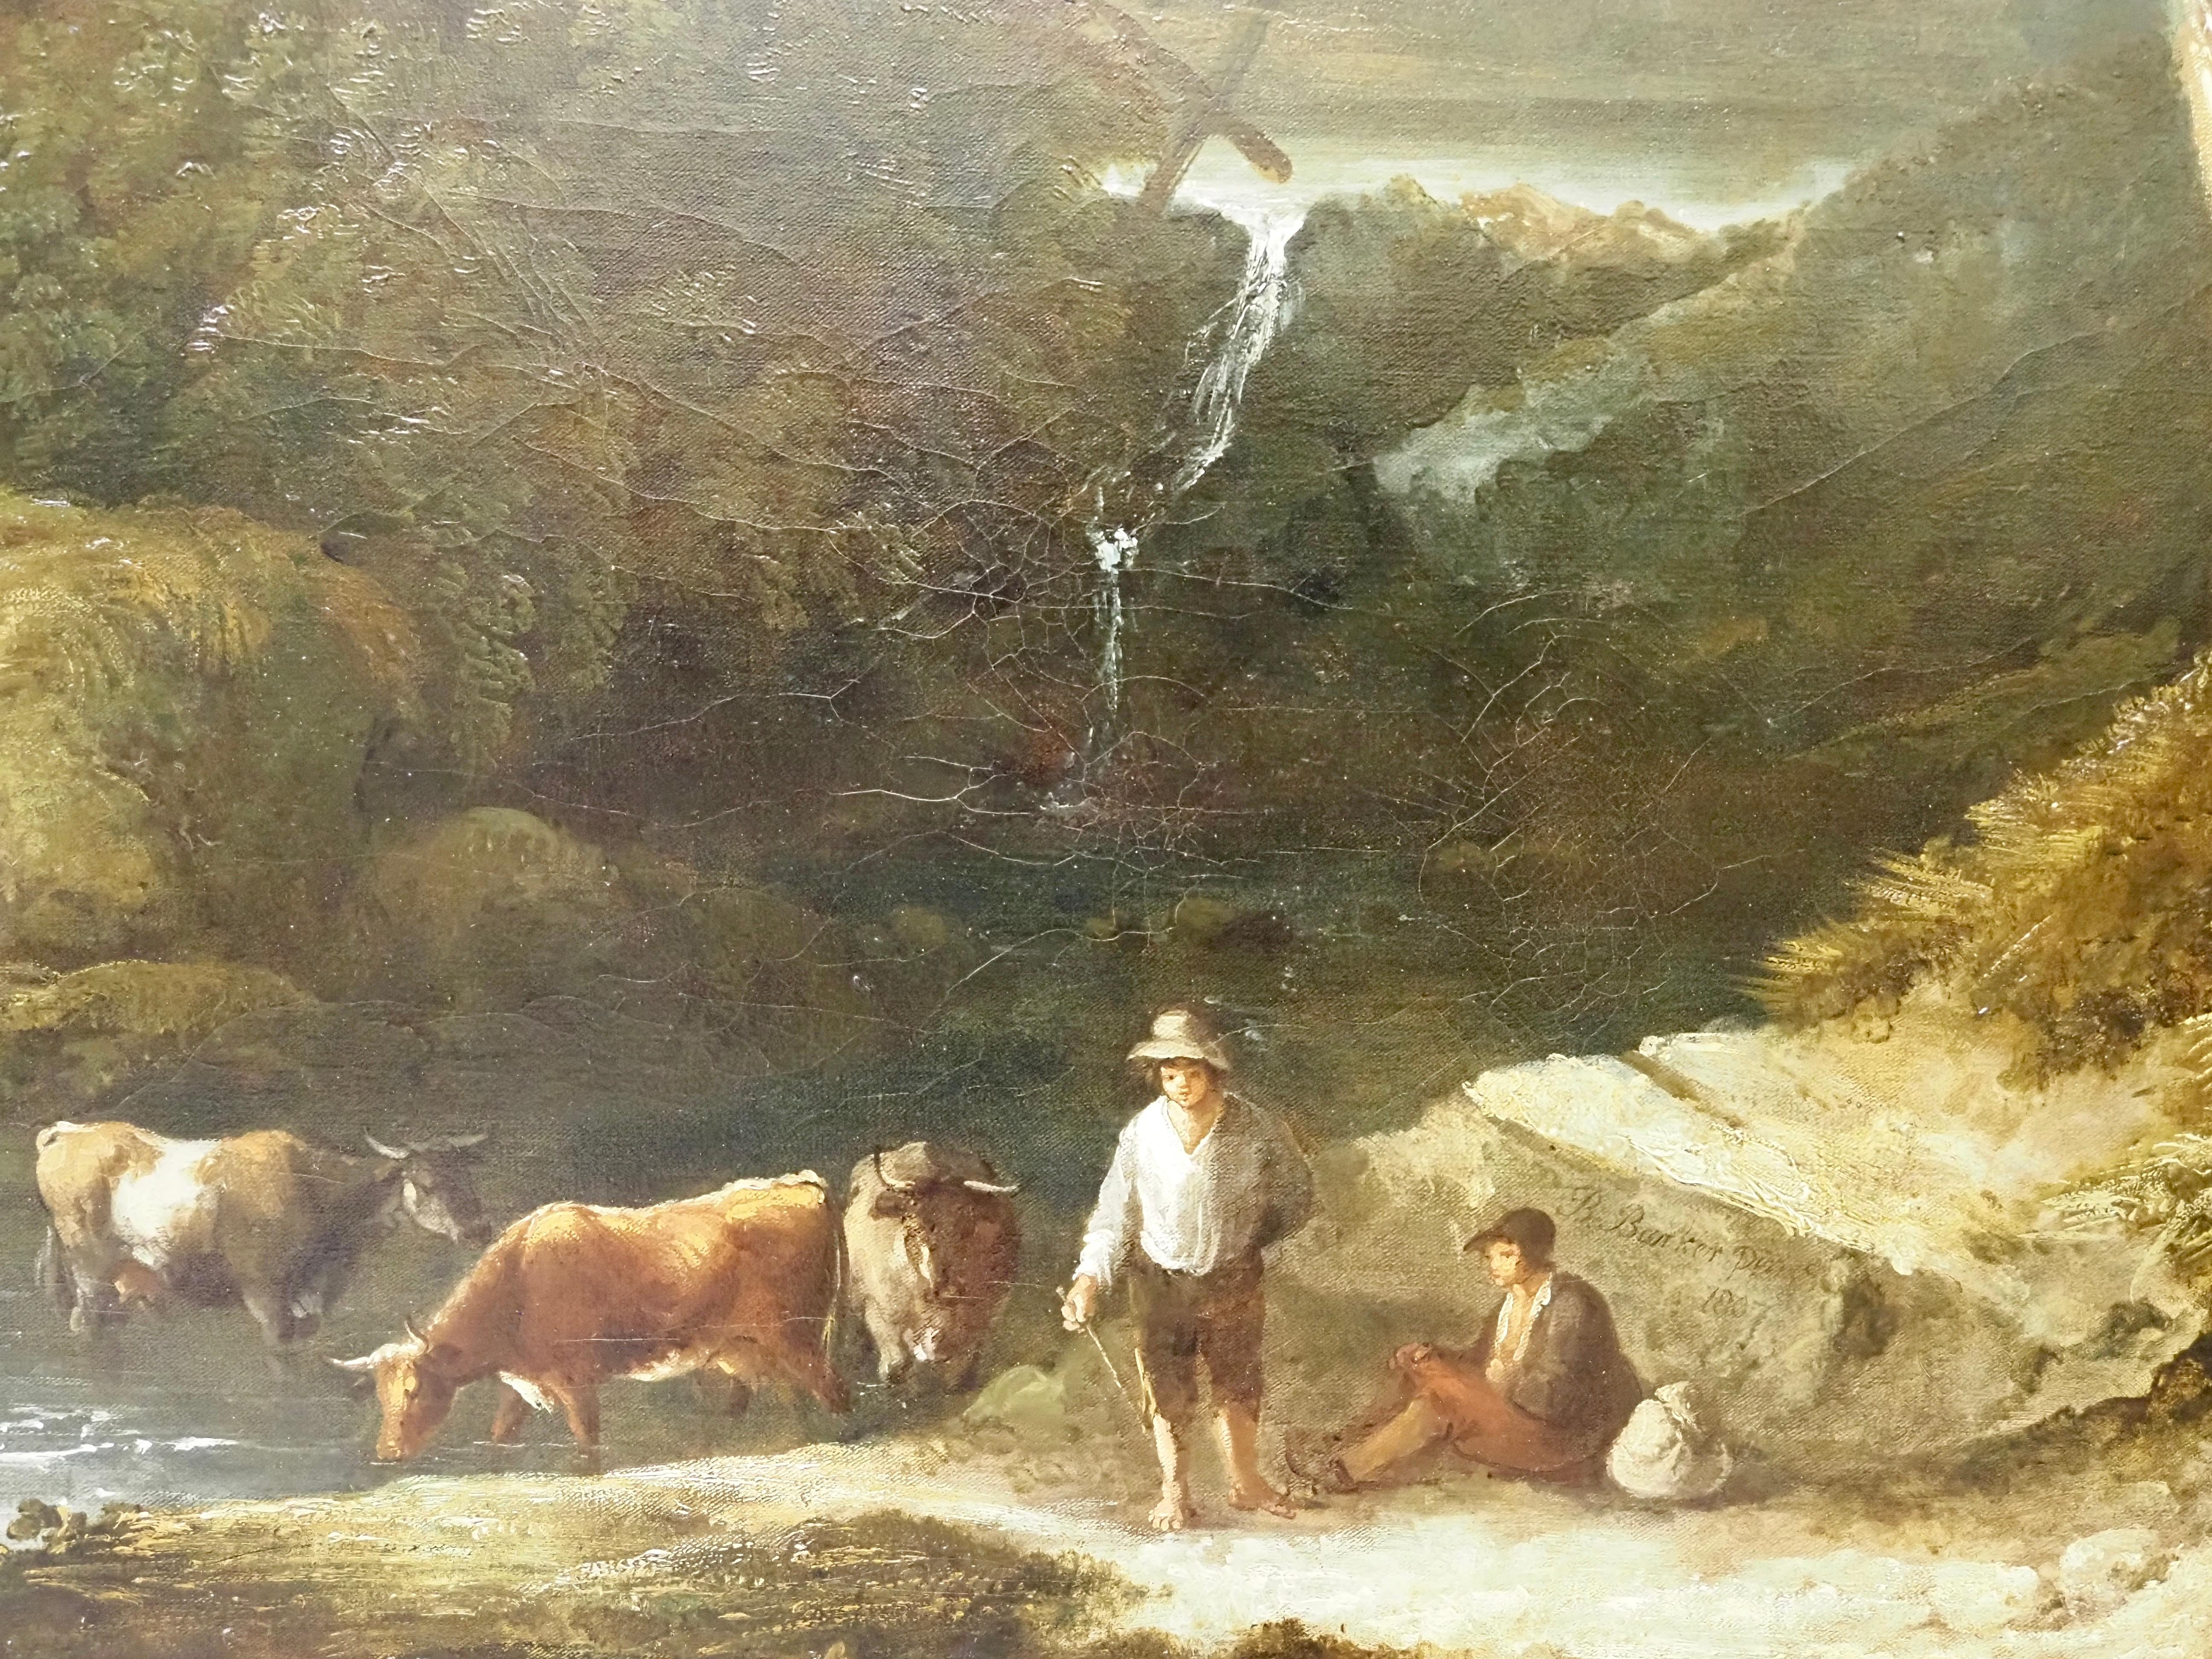 Benjamin Barker de Bath (Pontypool 1776-1838)
Un paysage de rivière boisée avec des bouviers
Signé et daté 